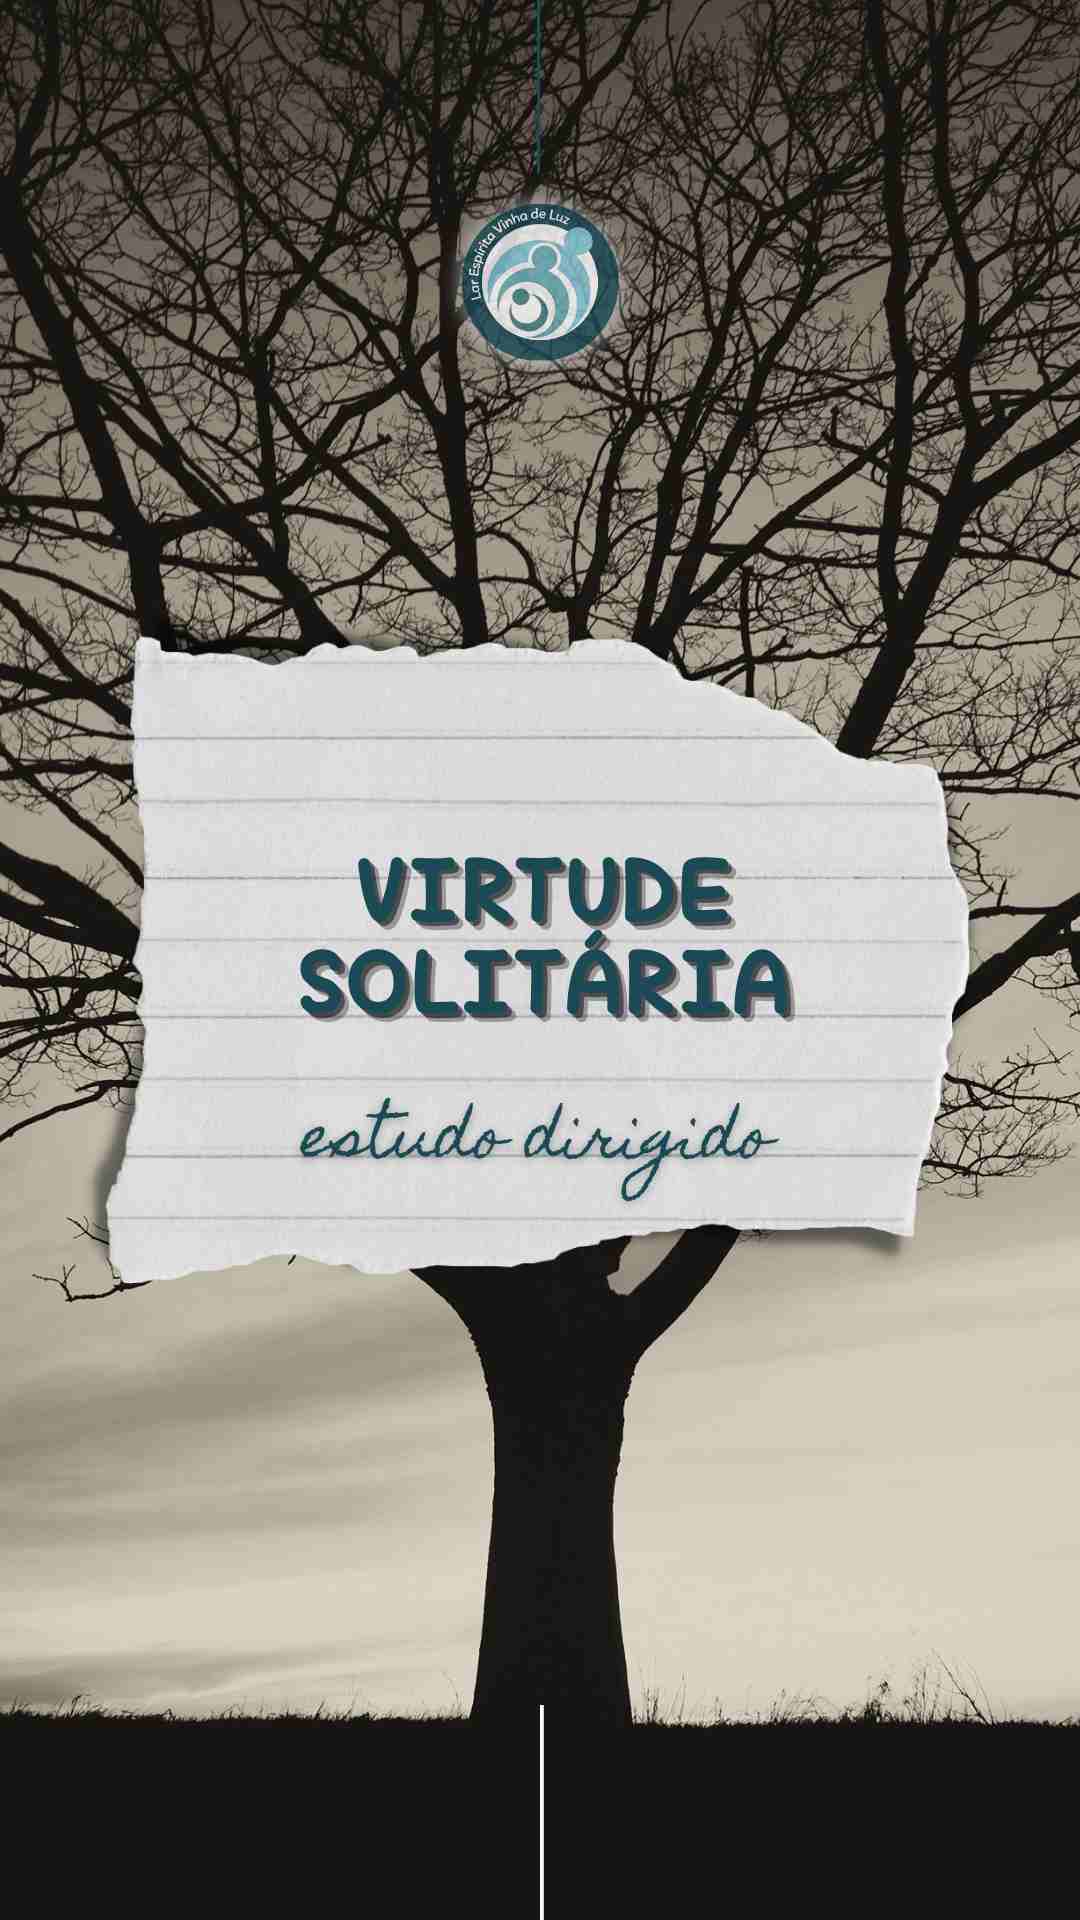 Virtude solitária